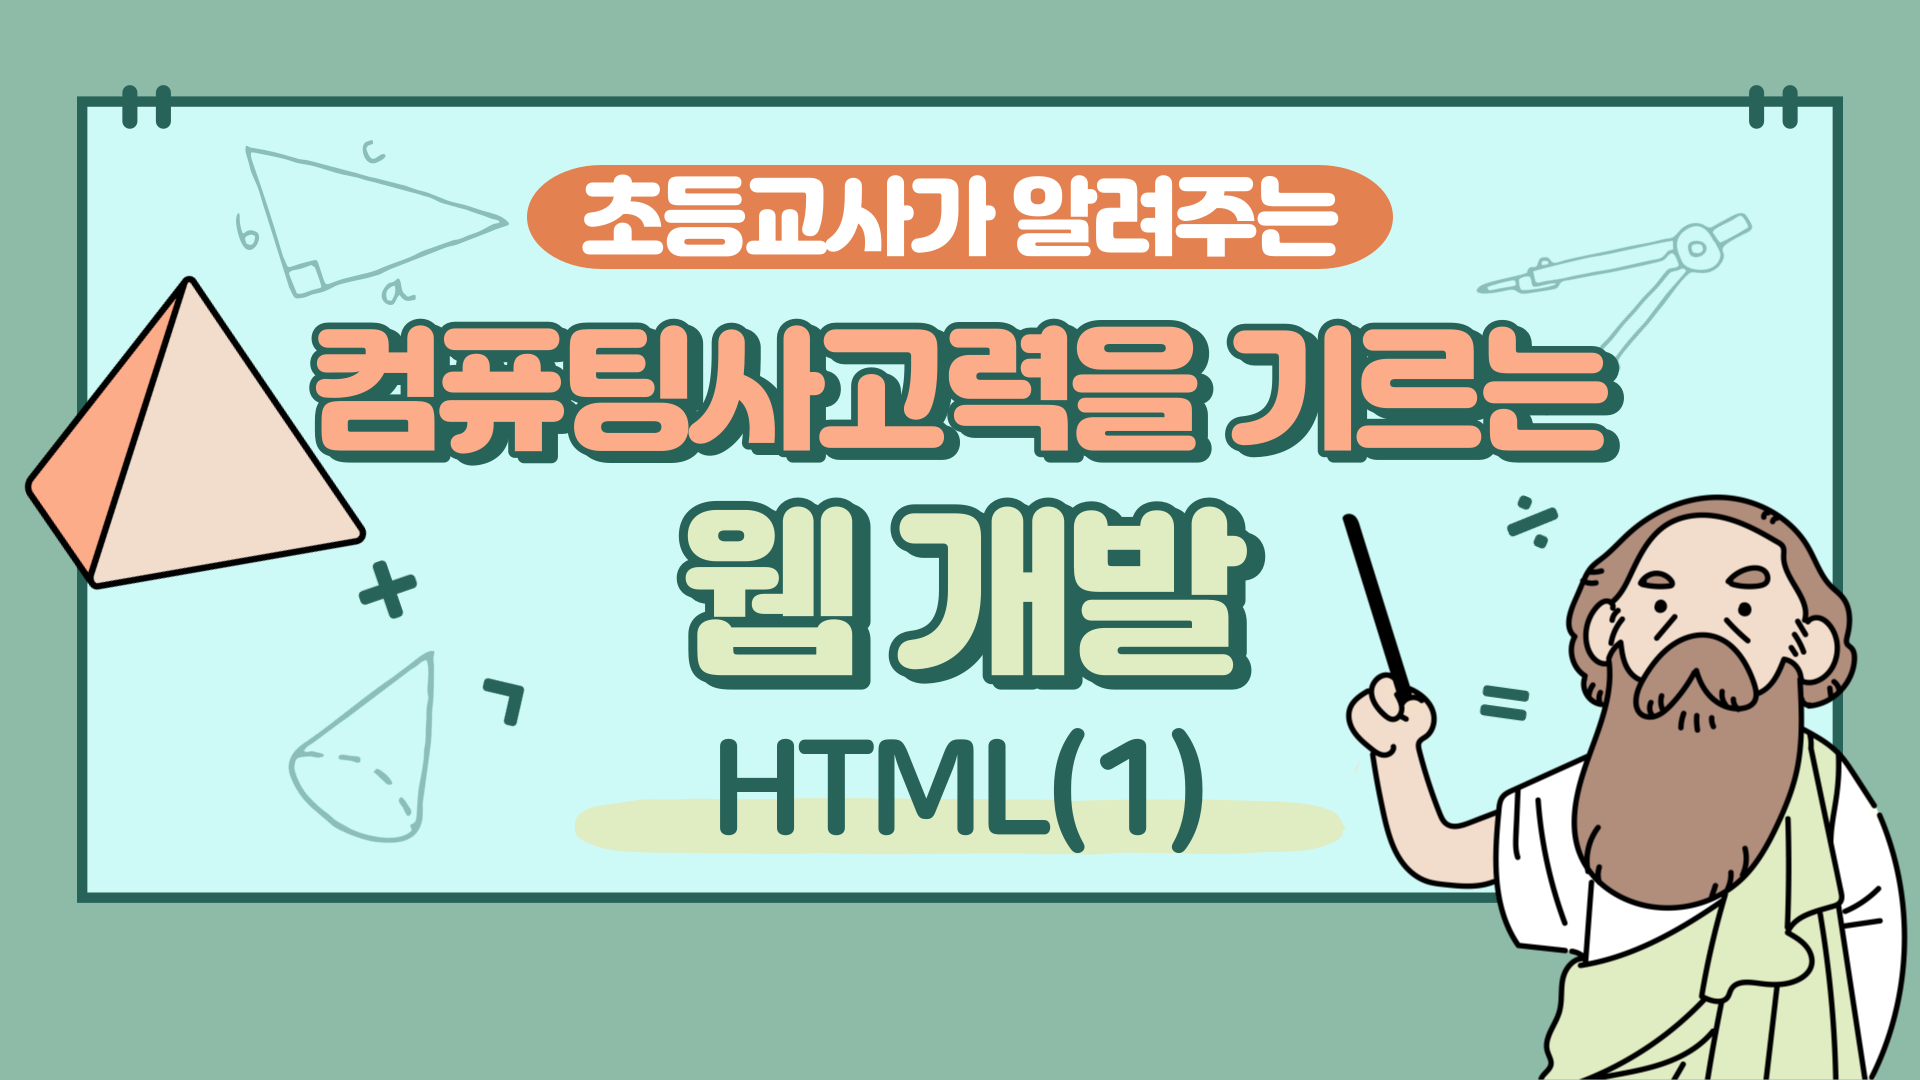 컴퓨팅사고력을 기르는 웹 개발(HTML) Step.1 (1기)